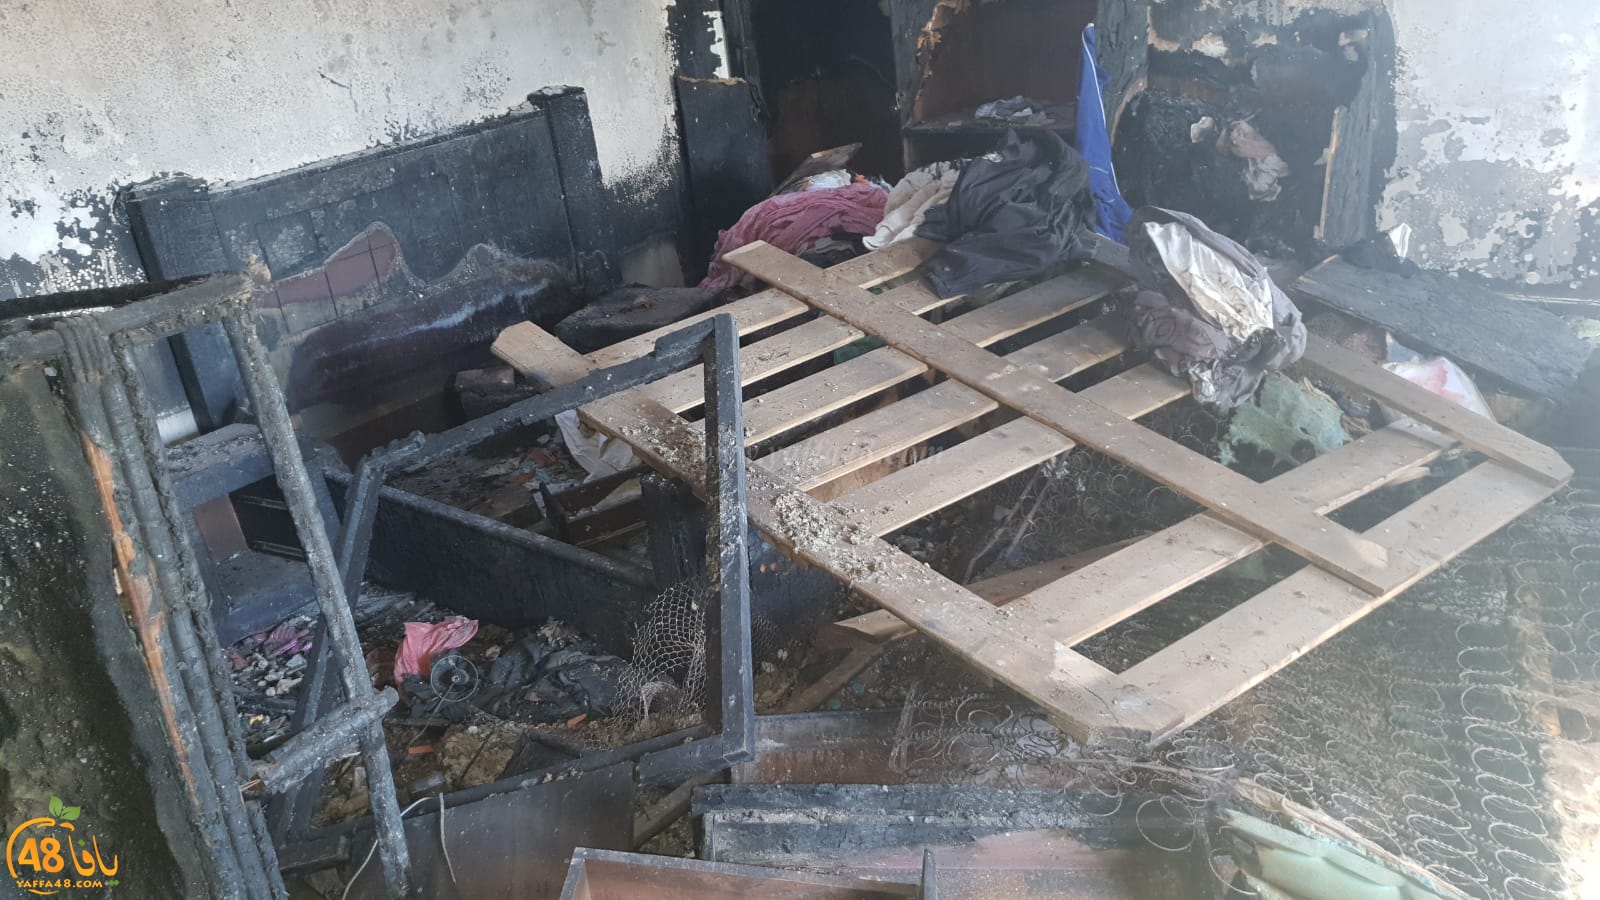 اللد: مناشدة لمساعدة عائلة بحي شنير بعد احتراق منزلهم